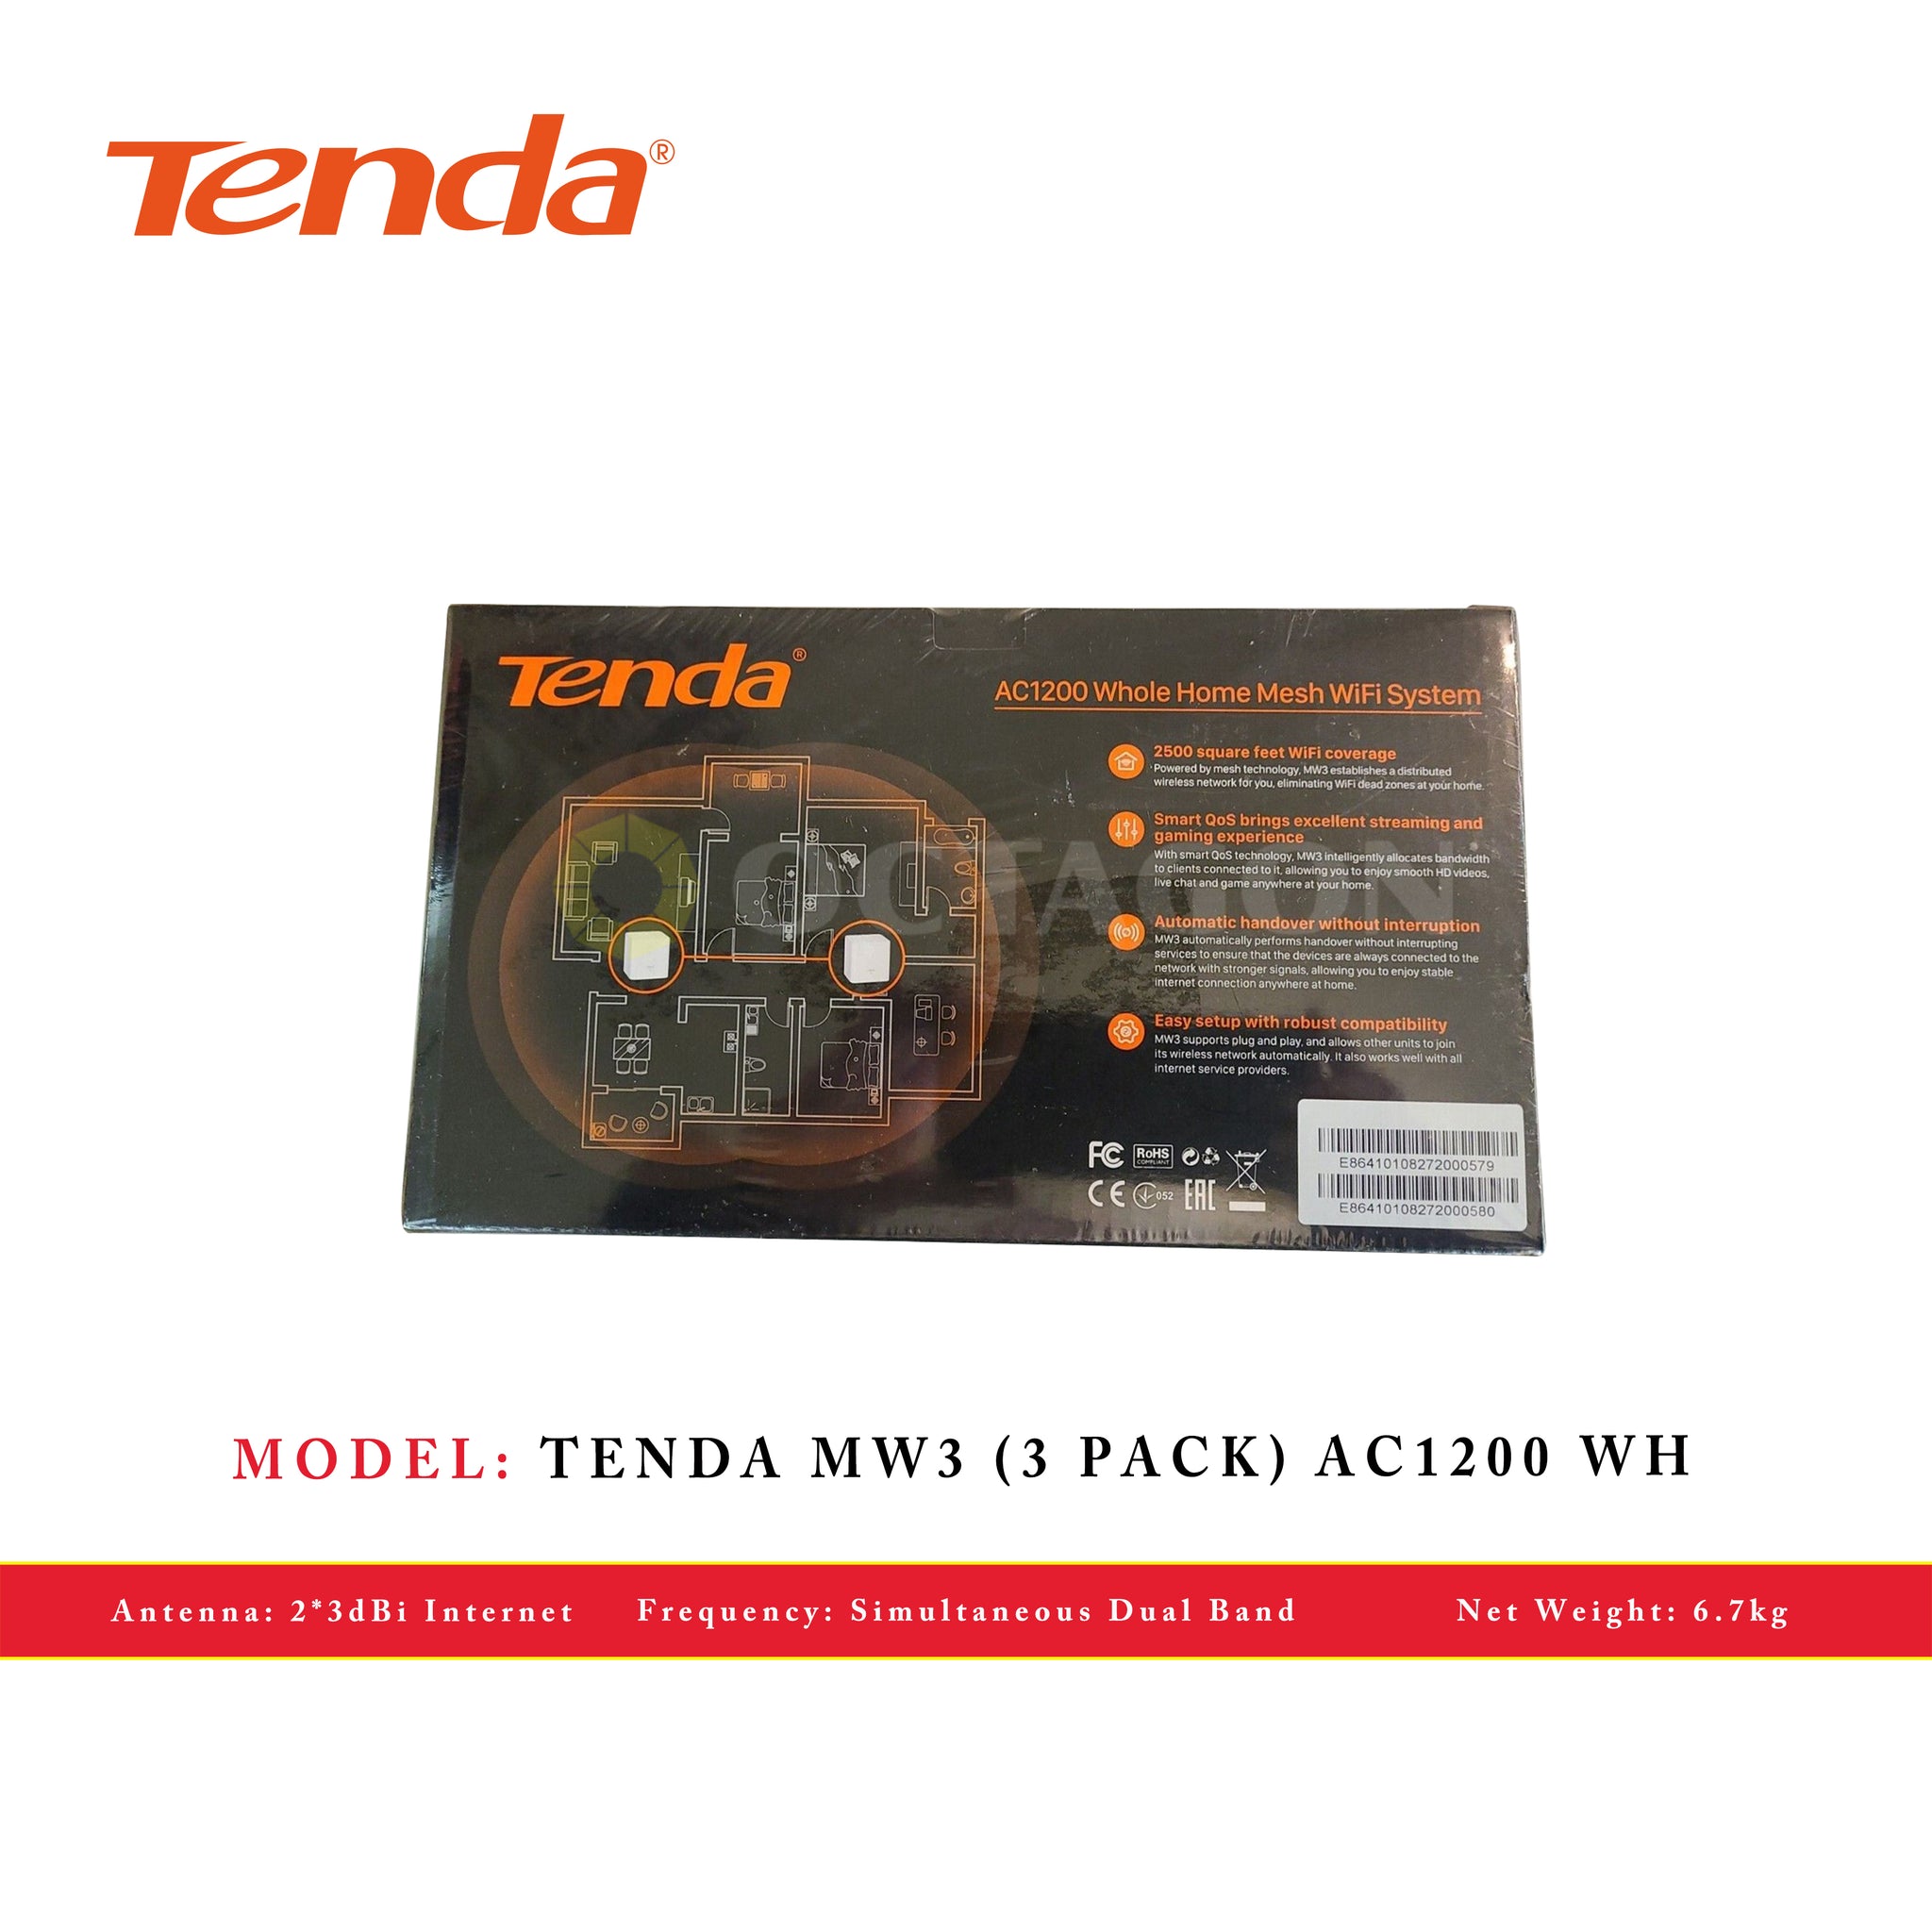 TENDA MW3 (3 PACK) AC1200 WH